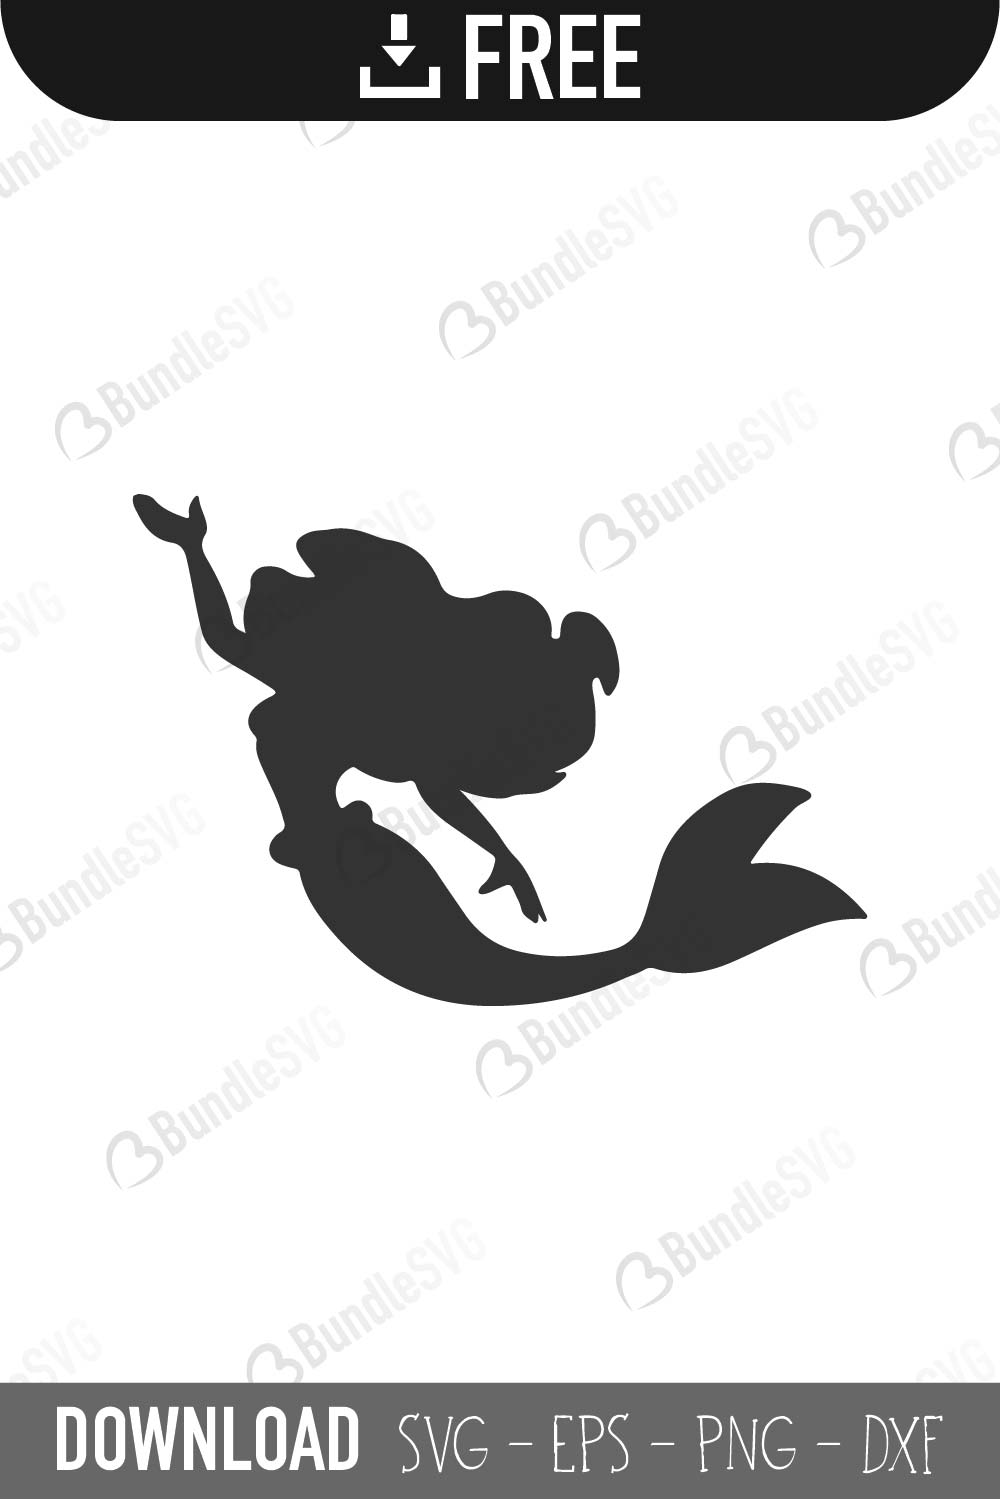 Download Little Mermaid SVG Cut Files Free SVG Download | BundleSVG.com